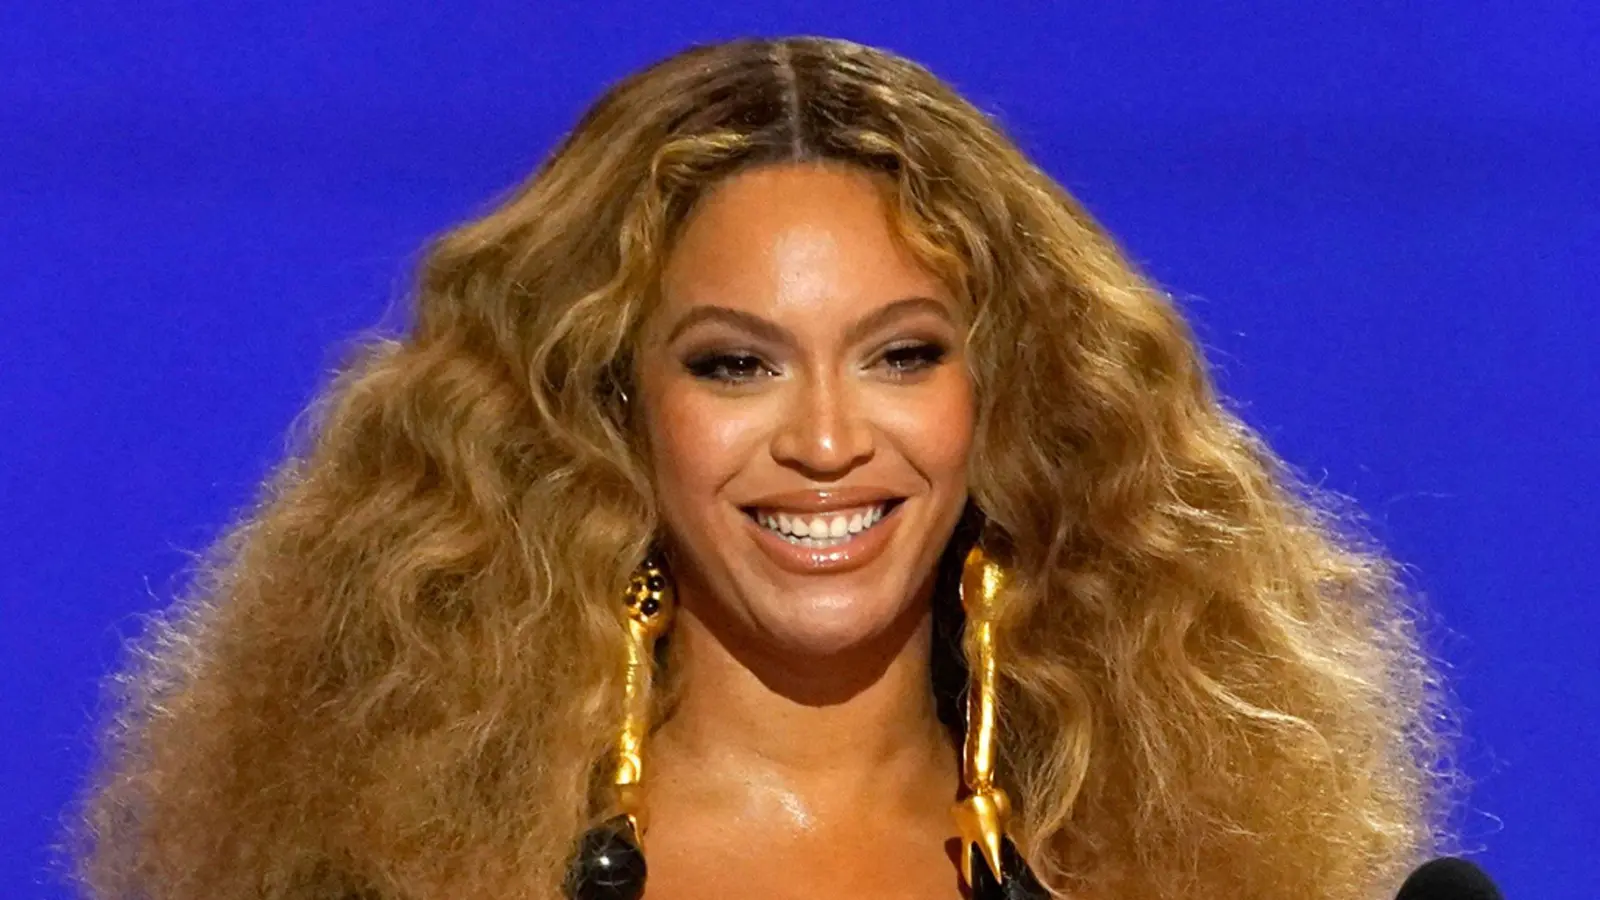 Sängerin Beyoncé führt als erste schwarze Frau die US-Charts der Country-Alben an. (Foto: Chris Pizzello/AP/dpa)